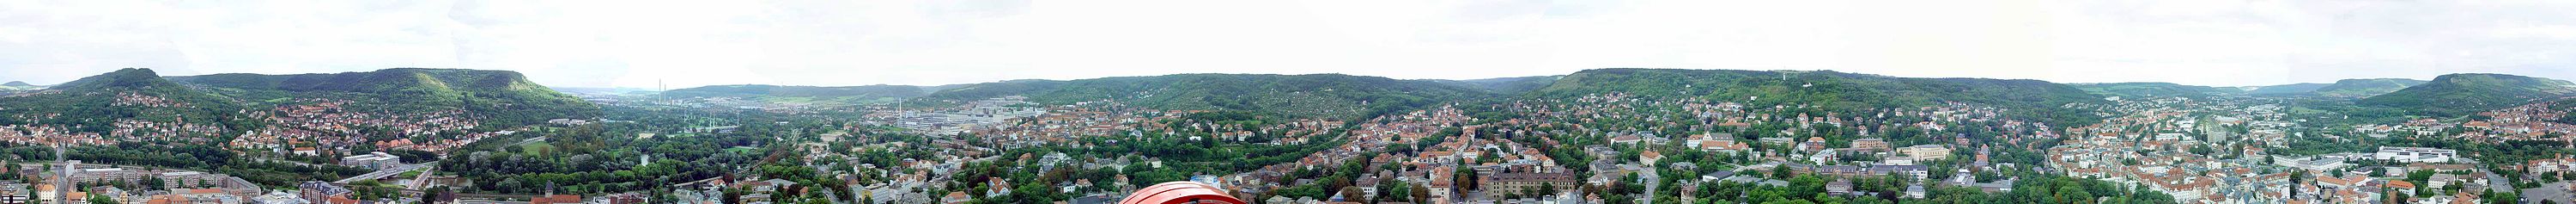 360°-Panoramabillede af Jena